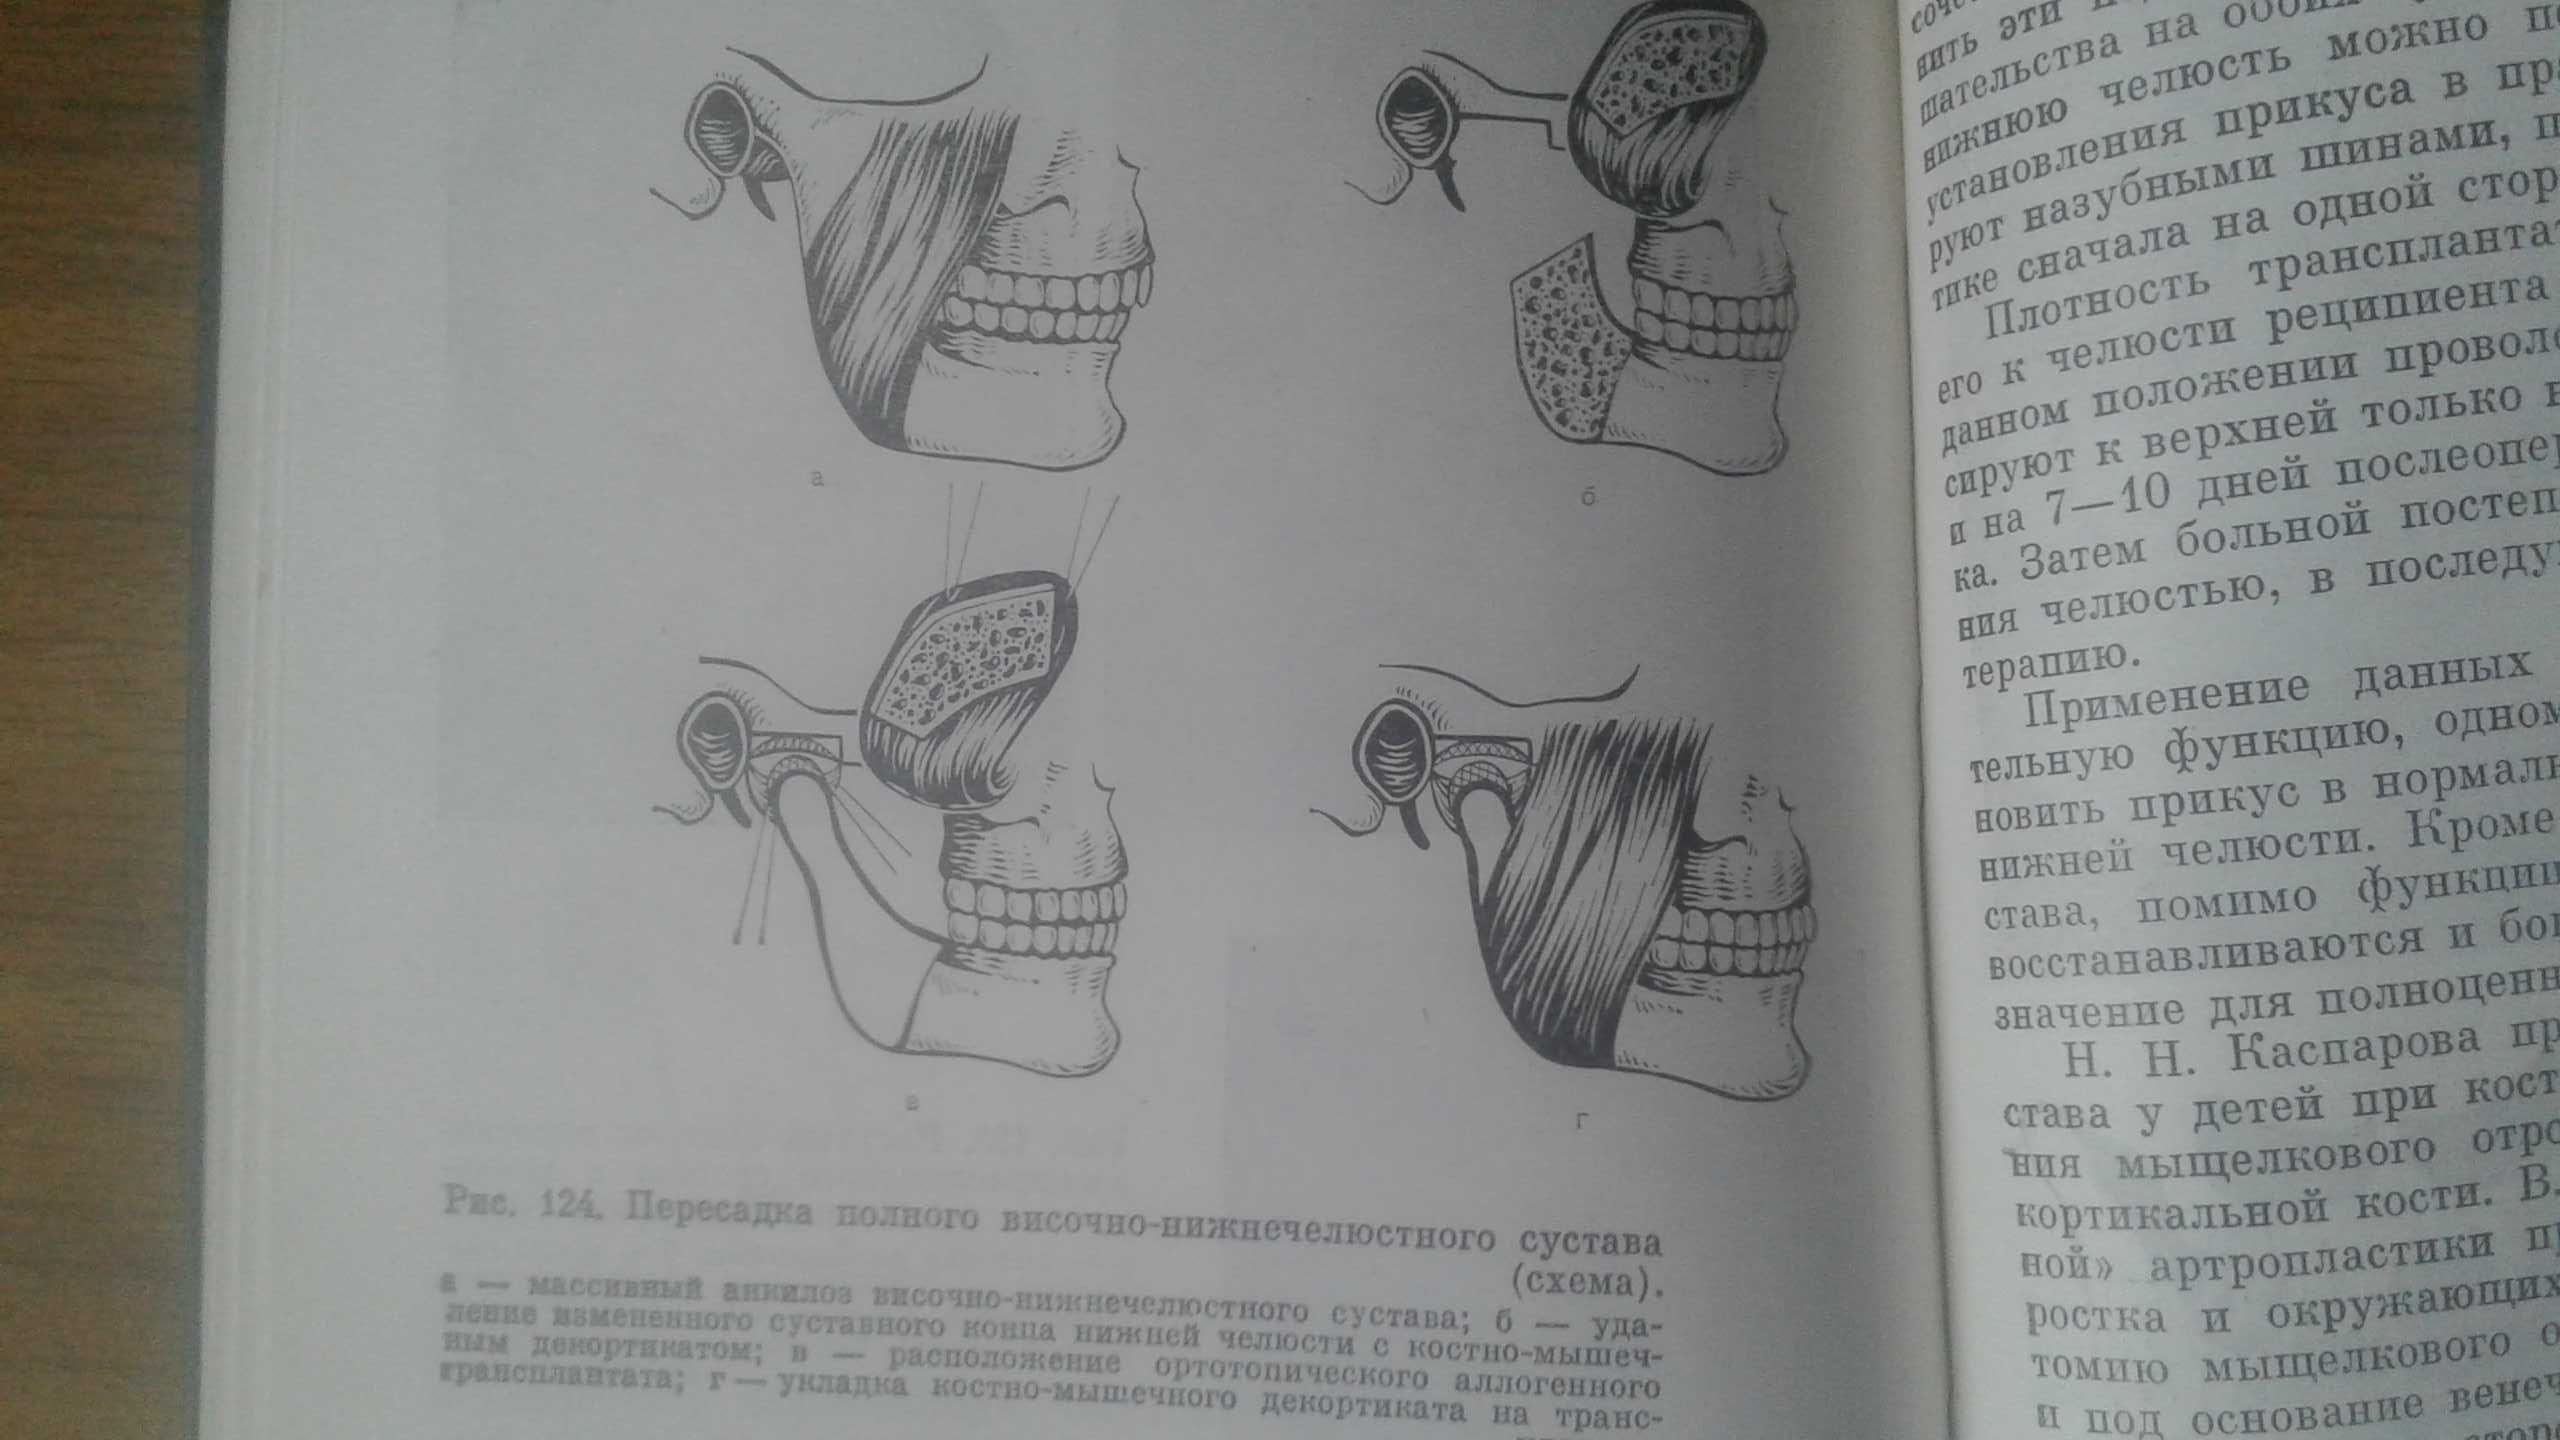 Травмы челюстно-лицевой области 1986 год пластическая хирургия